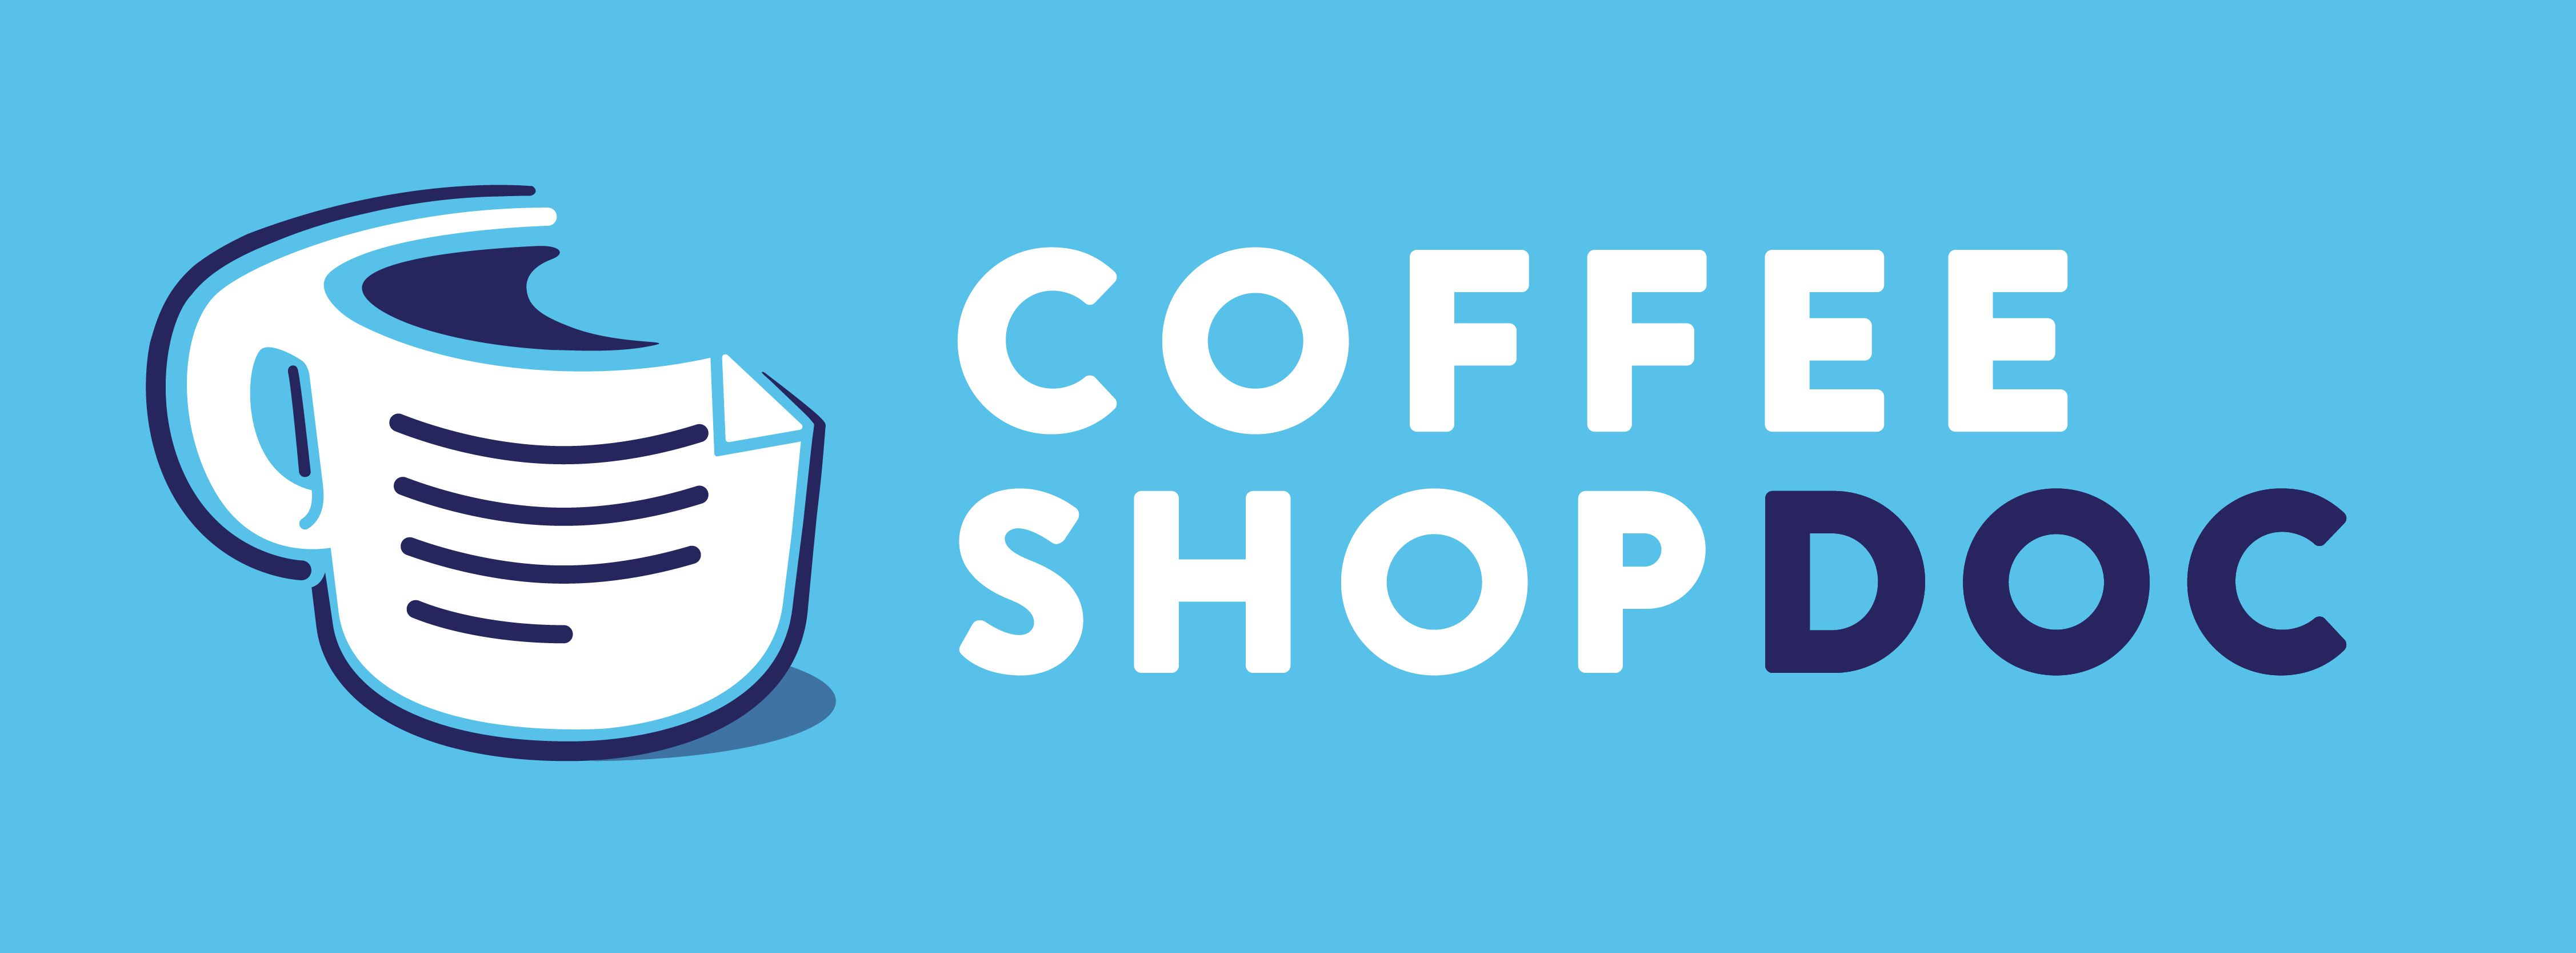 CoffeeShopDoc_Logo